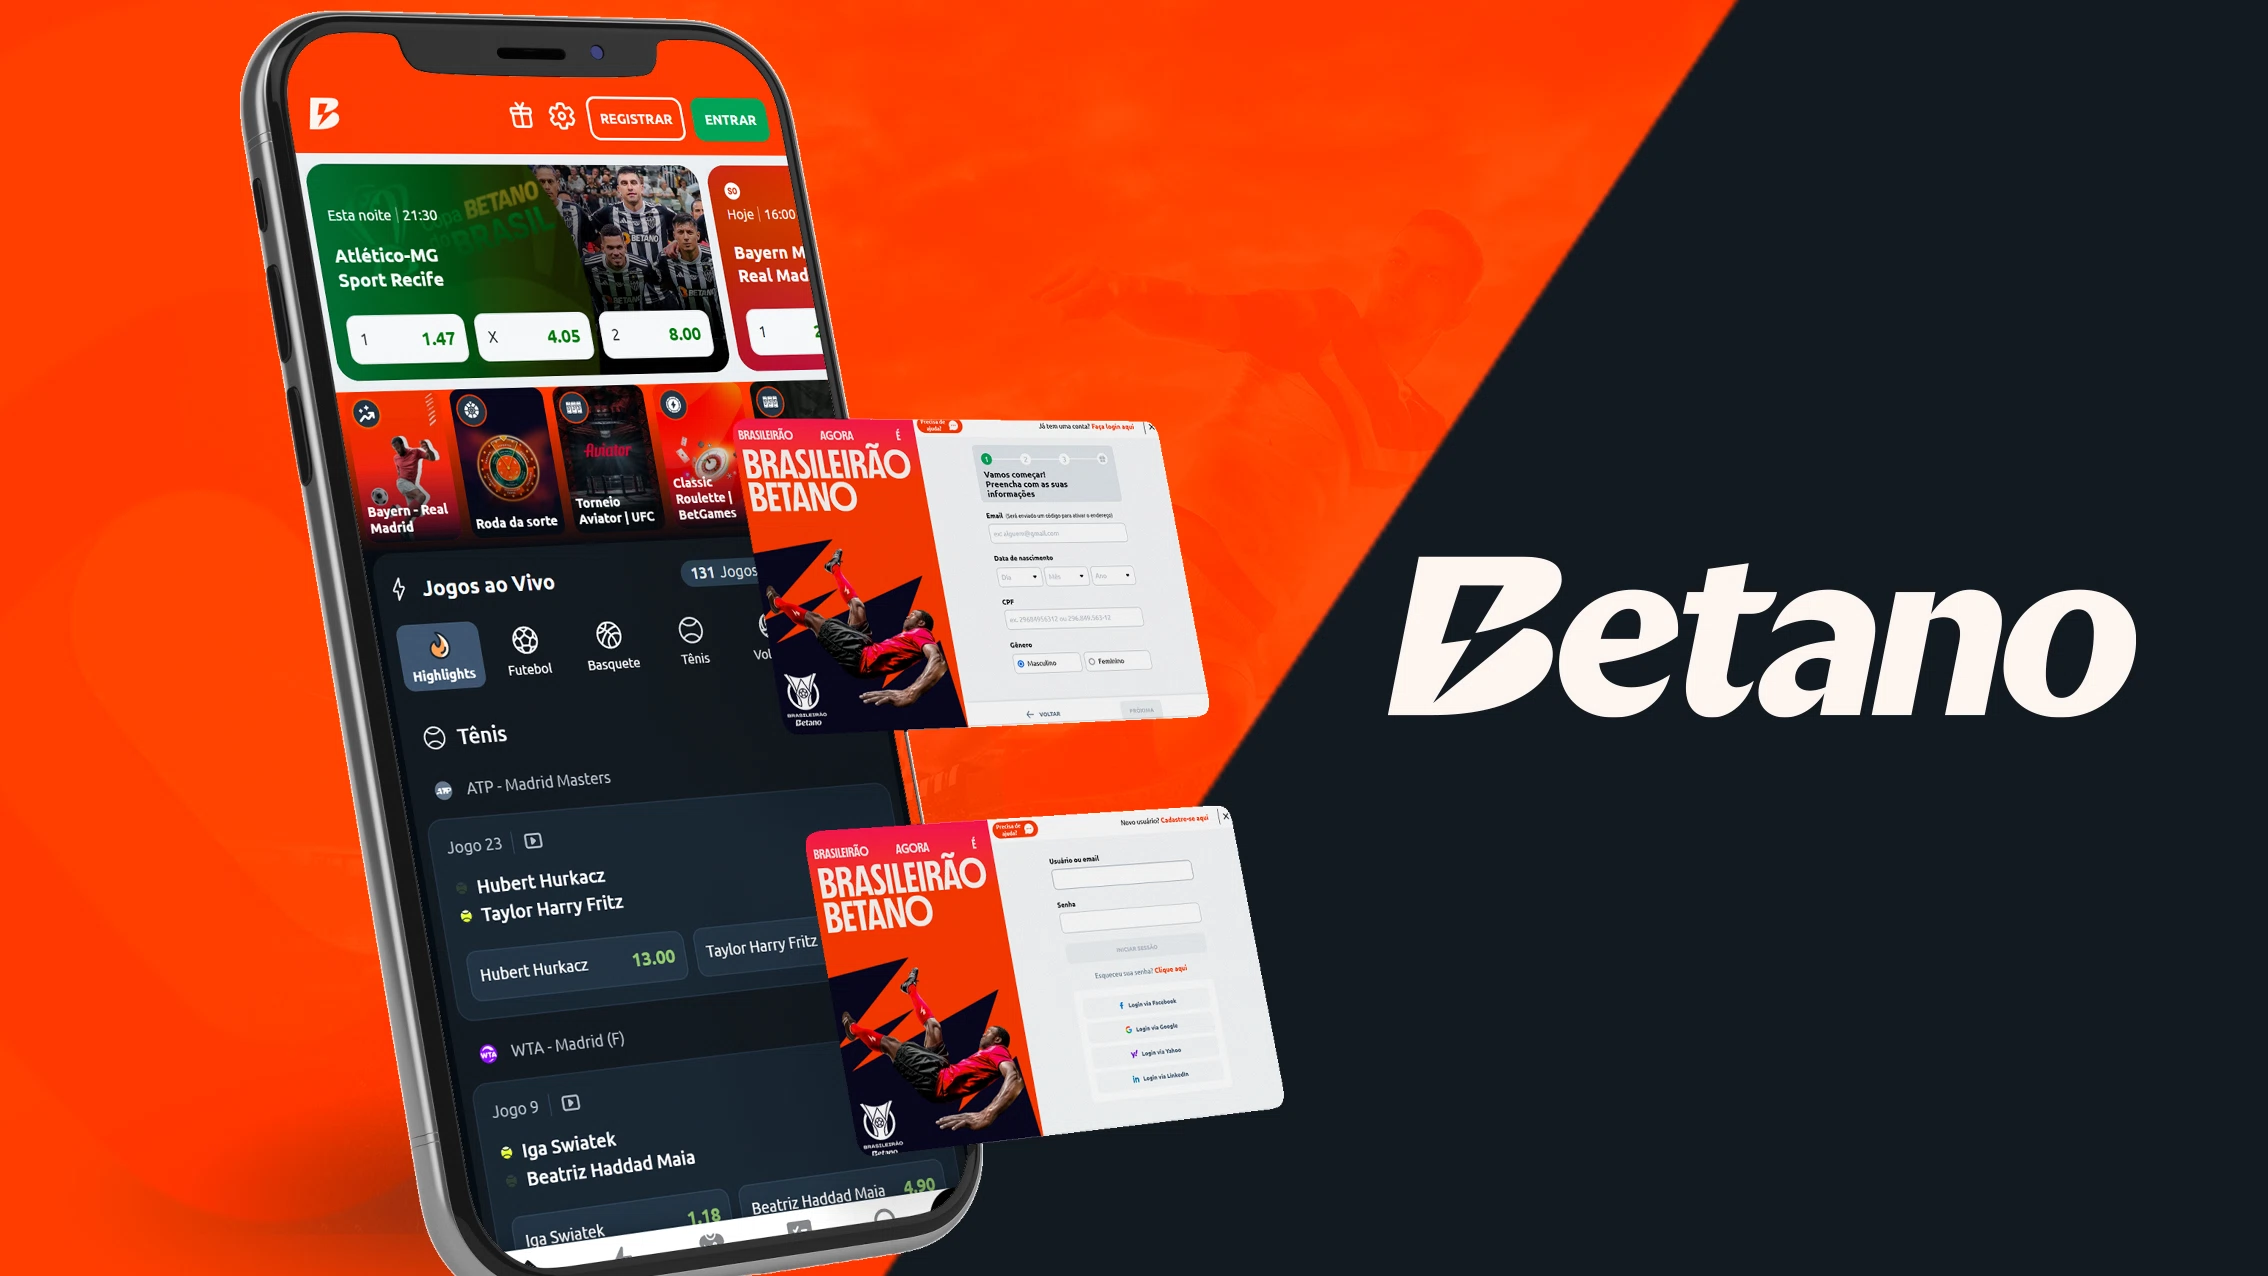 Imagem mostra smartphone aberto no app da Betano